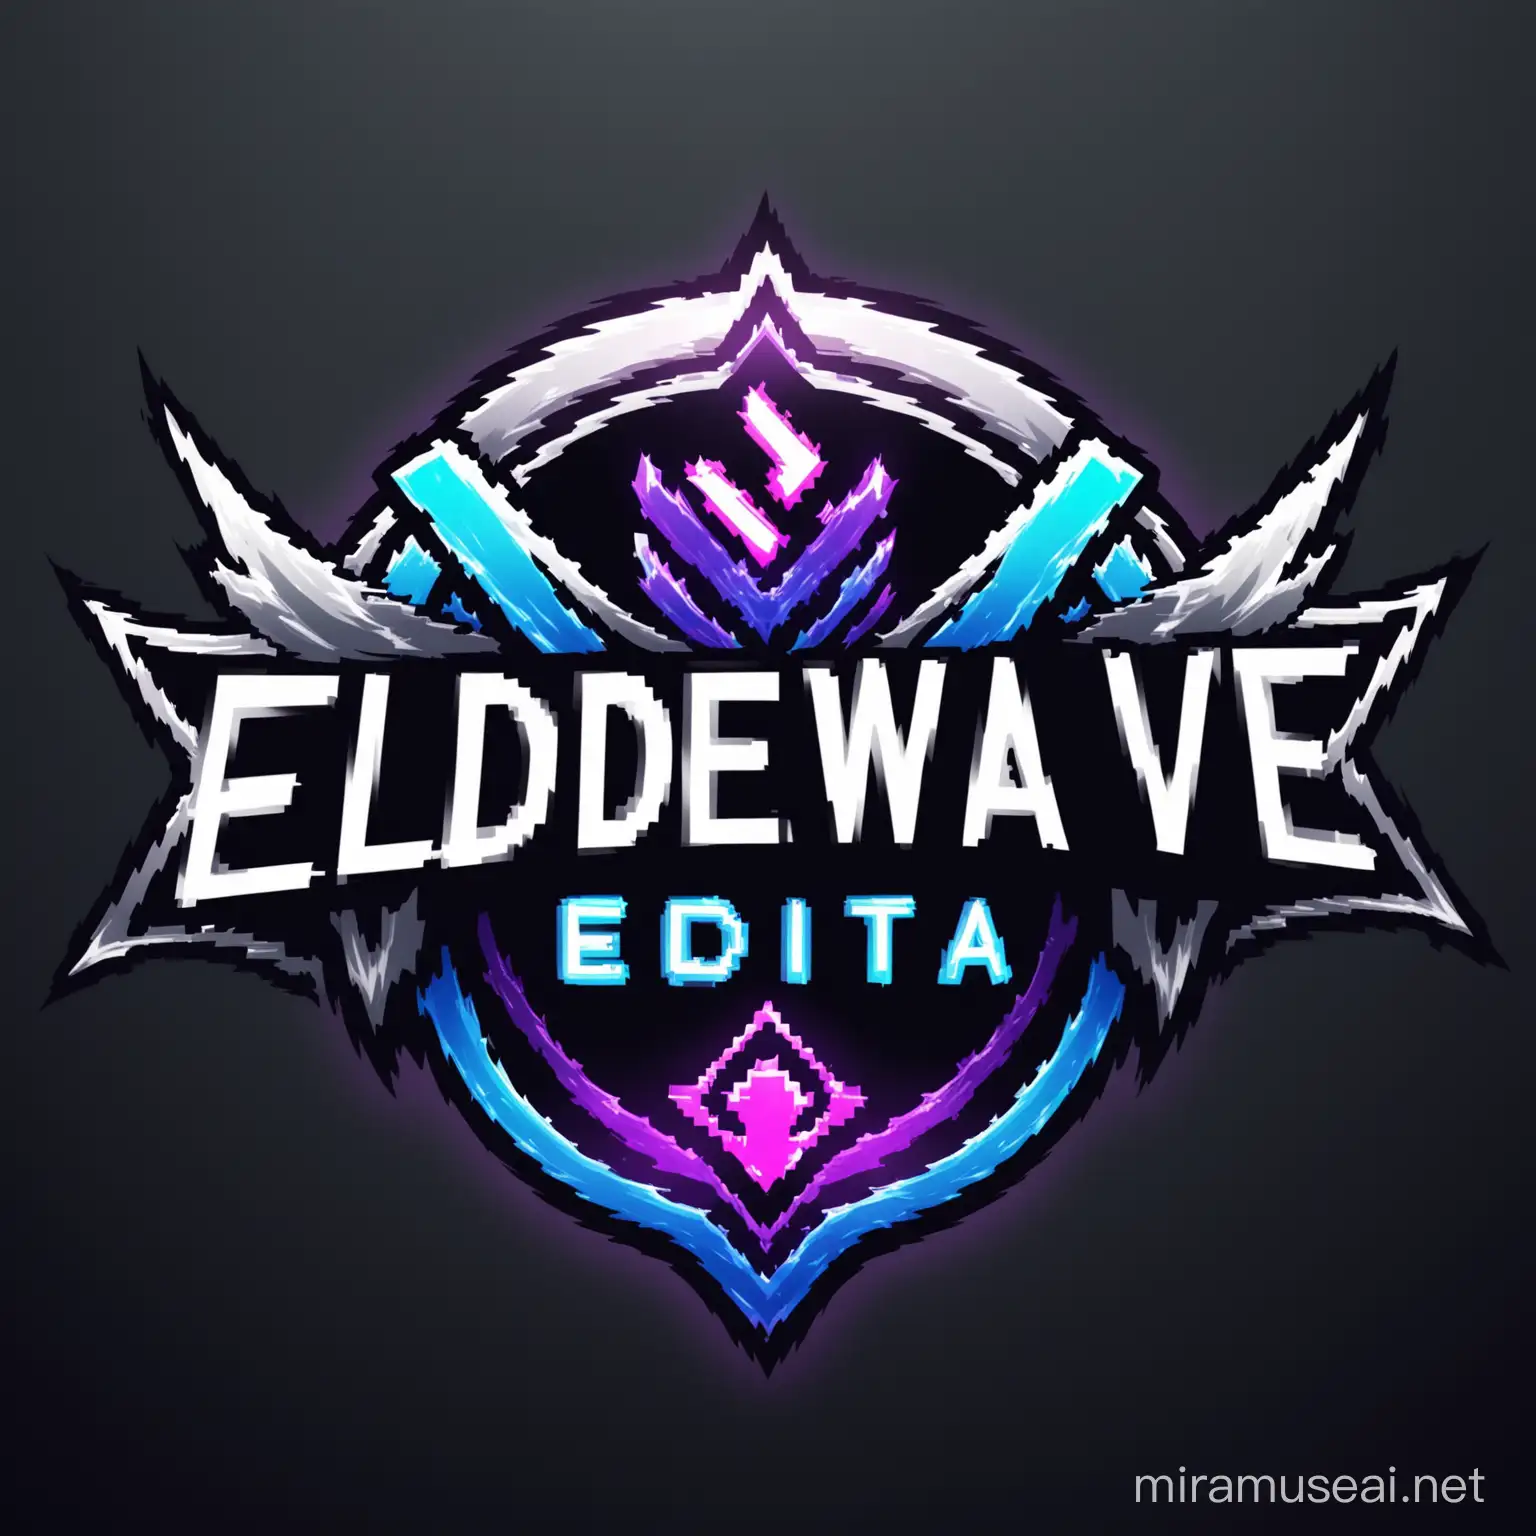 Bladewave editz 
A yt channel logo 